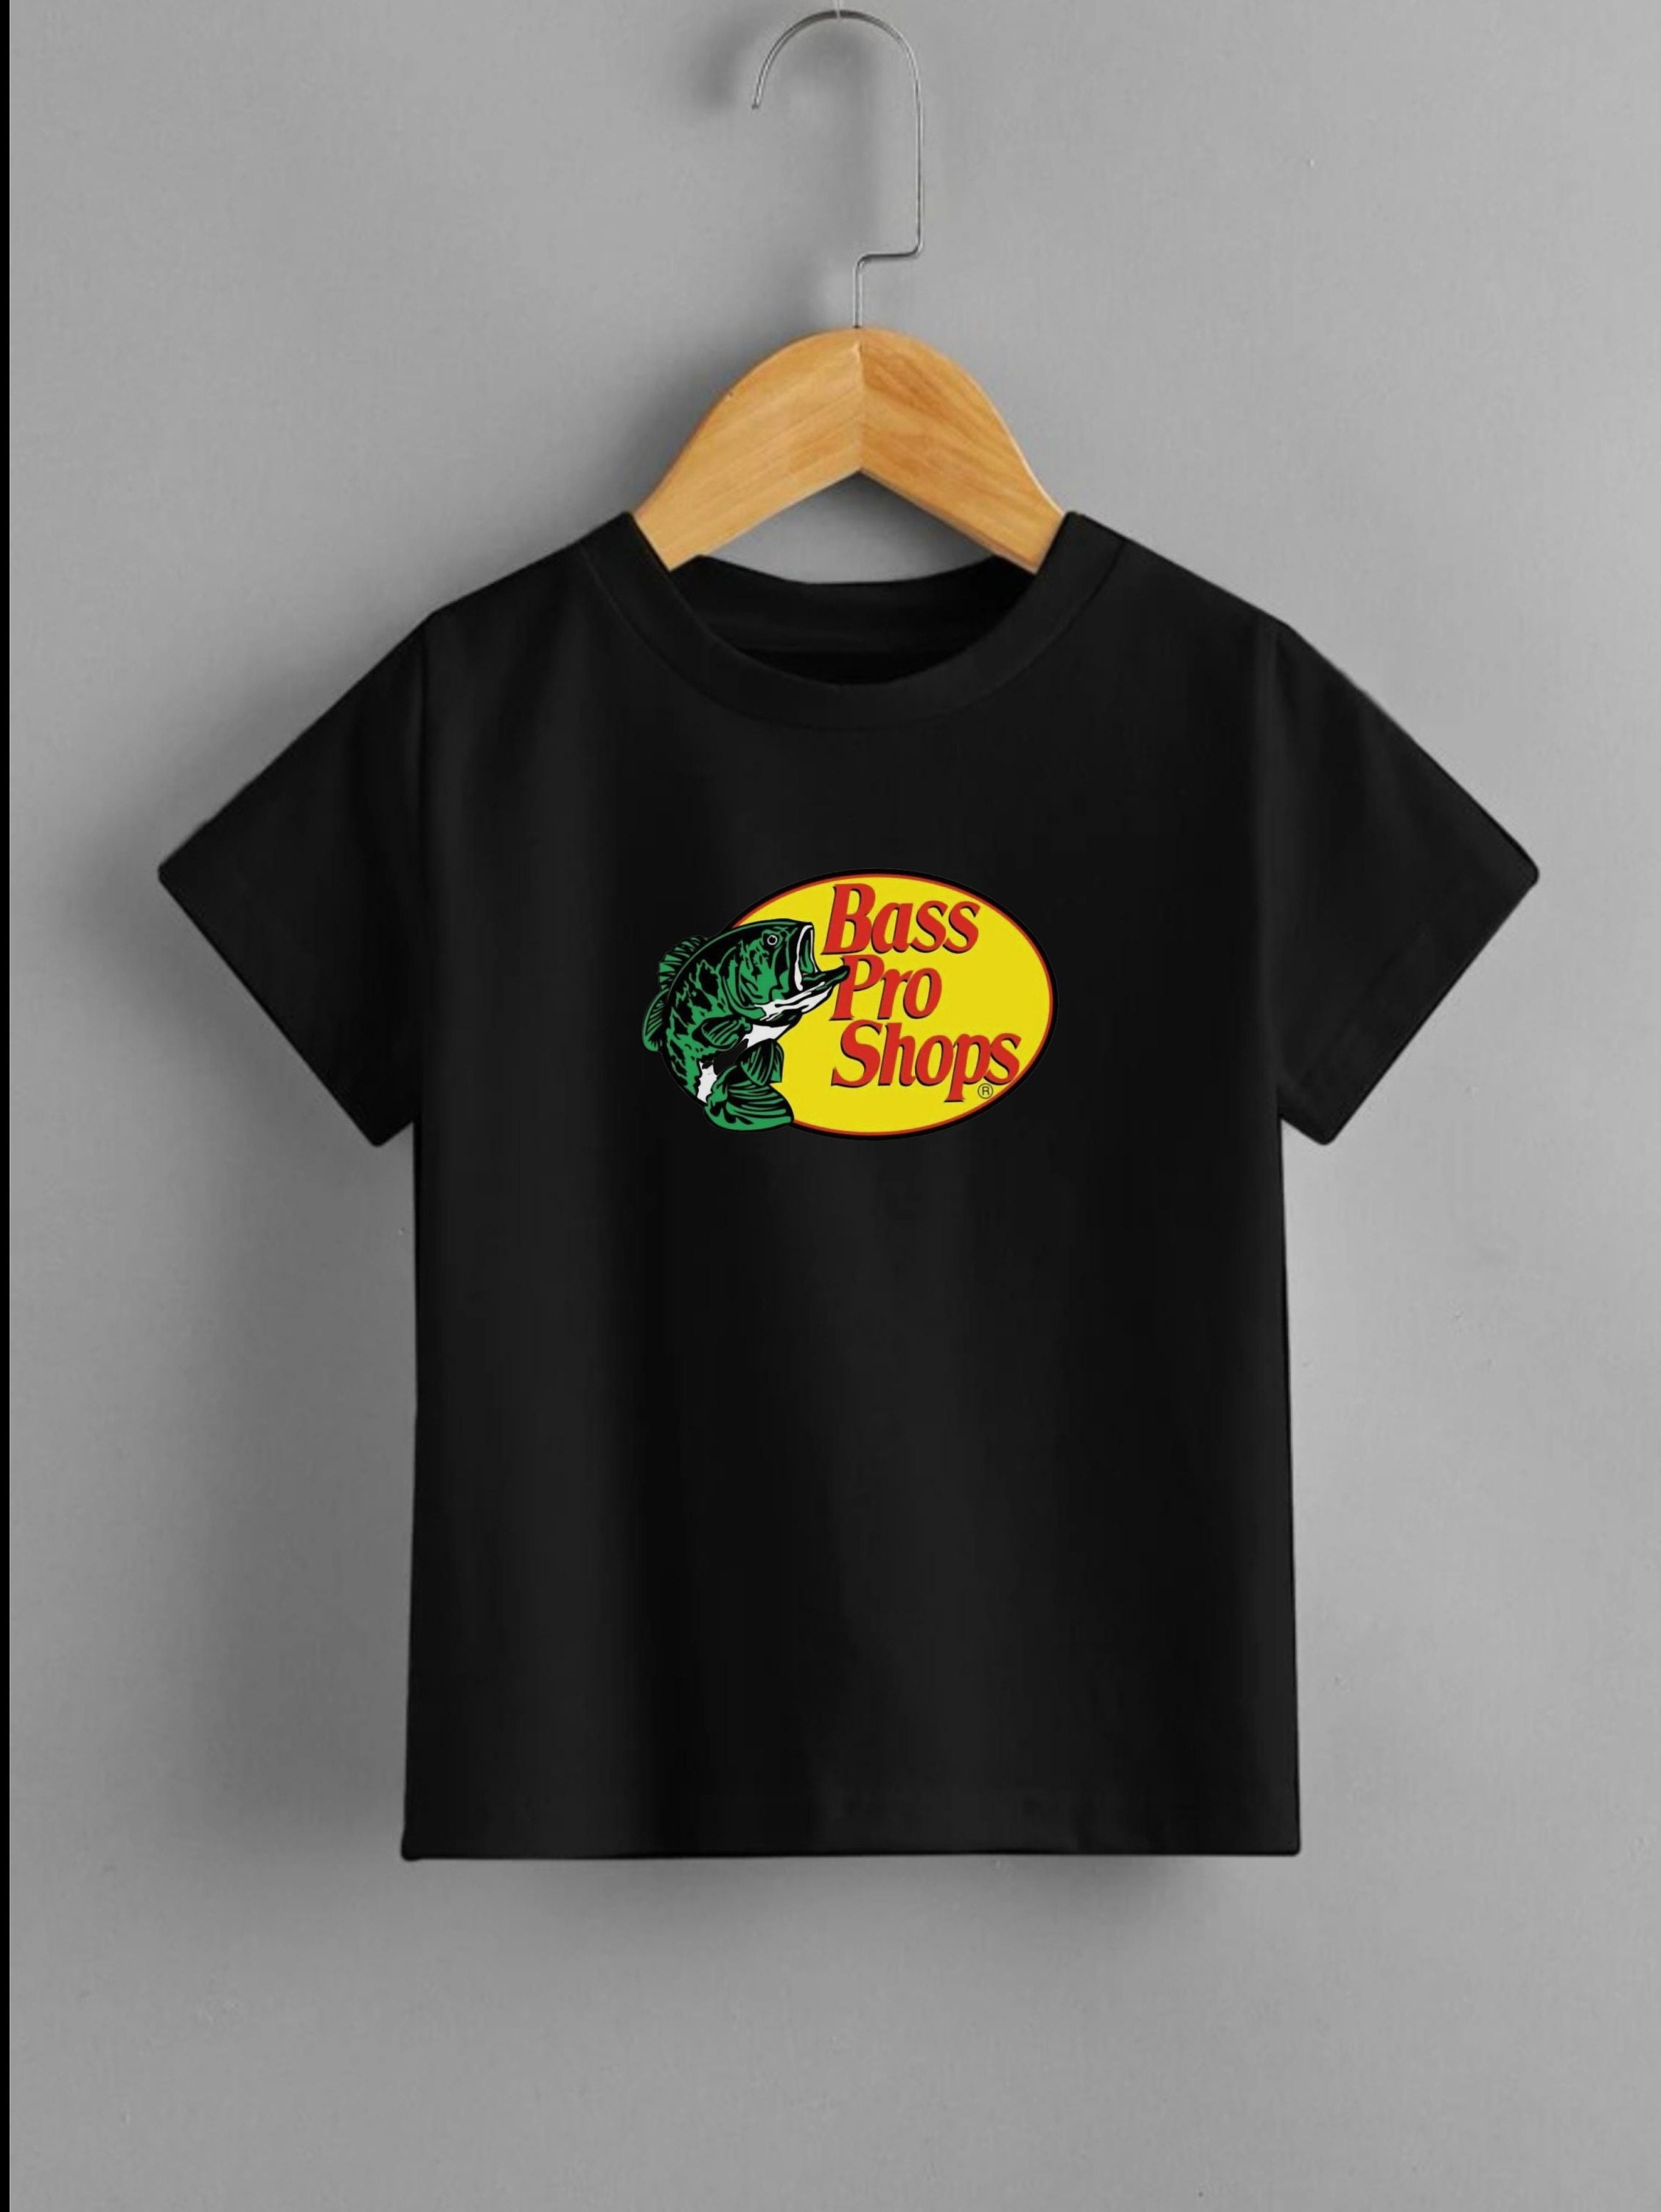 Bass pro shops t-shirt.T-shirt for men. T-shirt for women. summer t-shirt. perfect for a gift